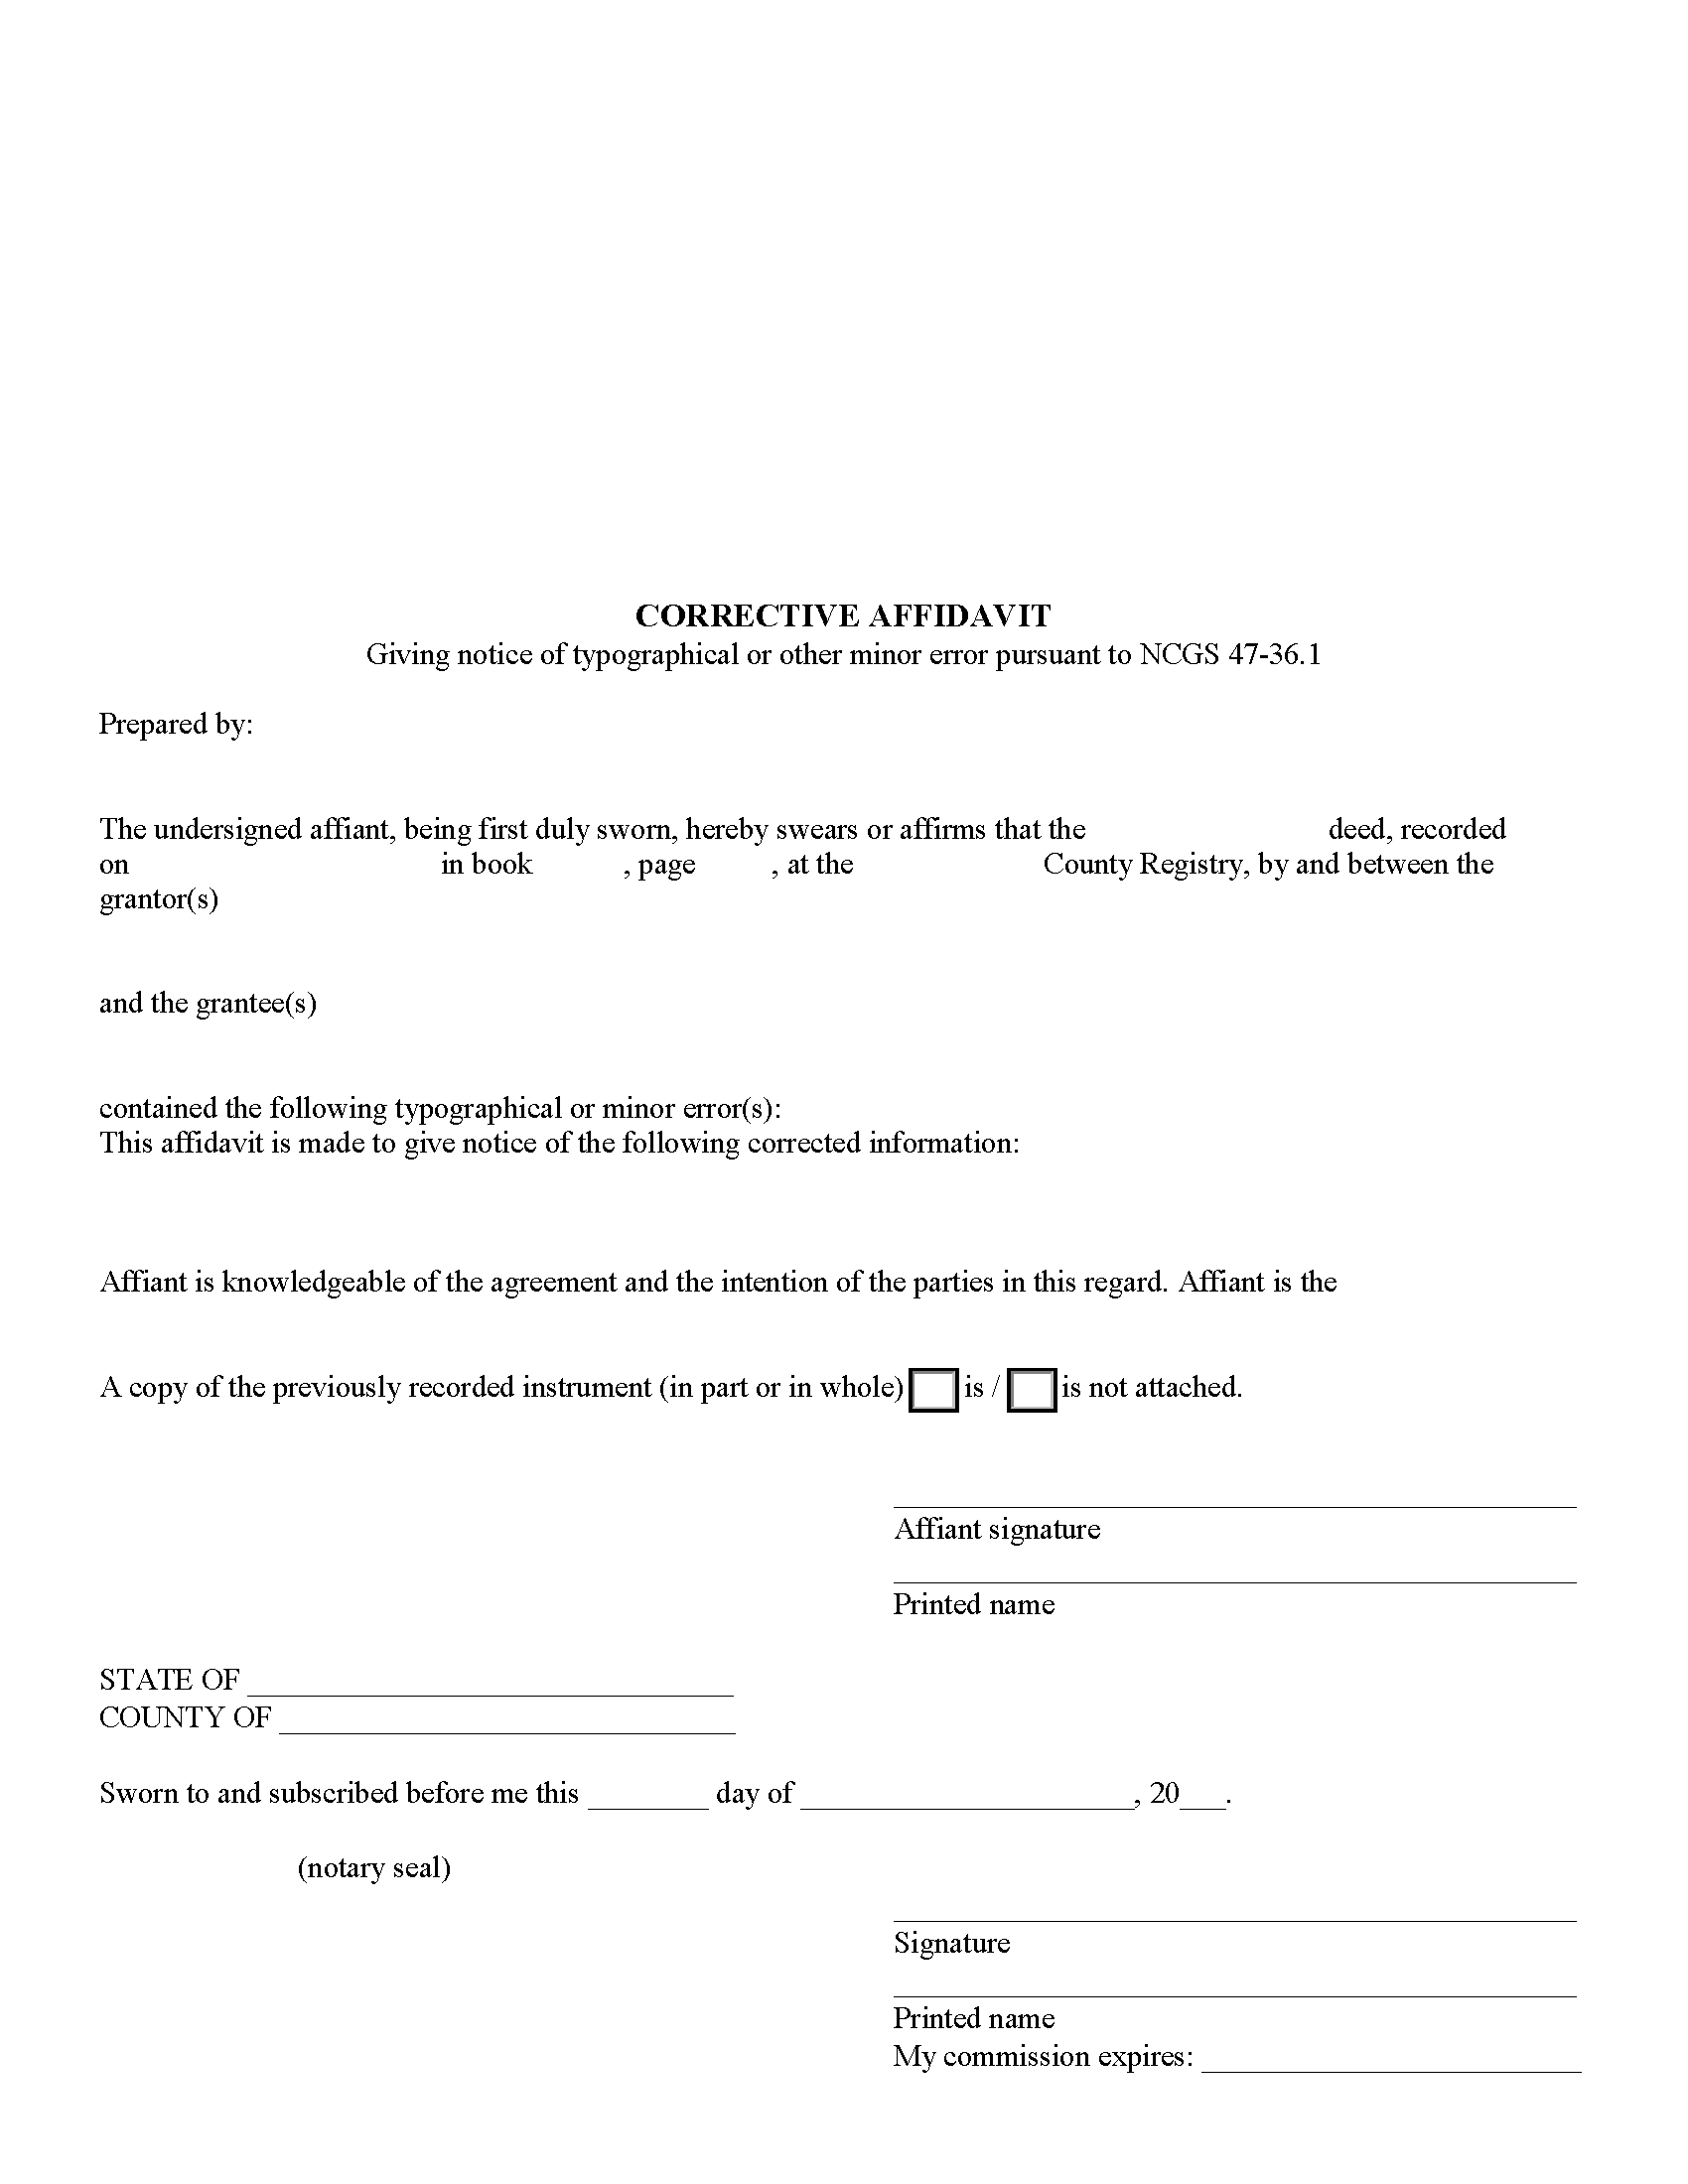 Corrective Affidavit Form